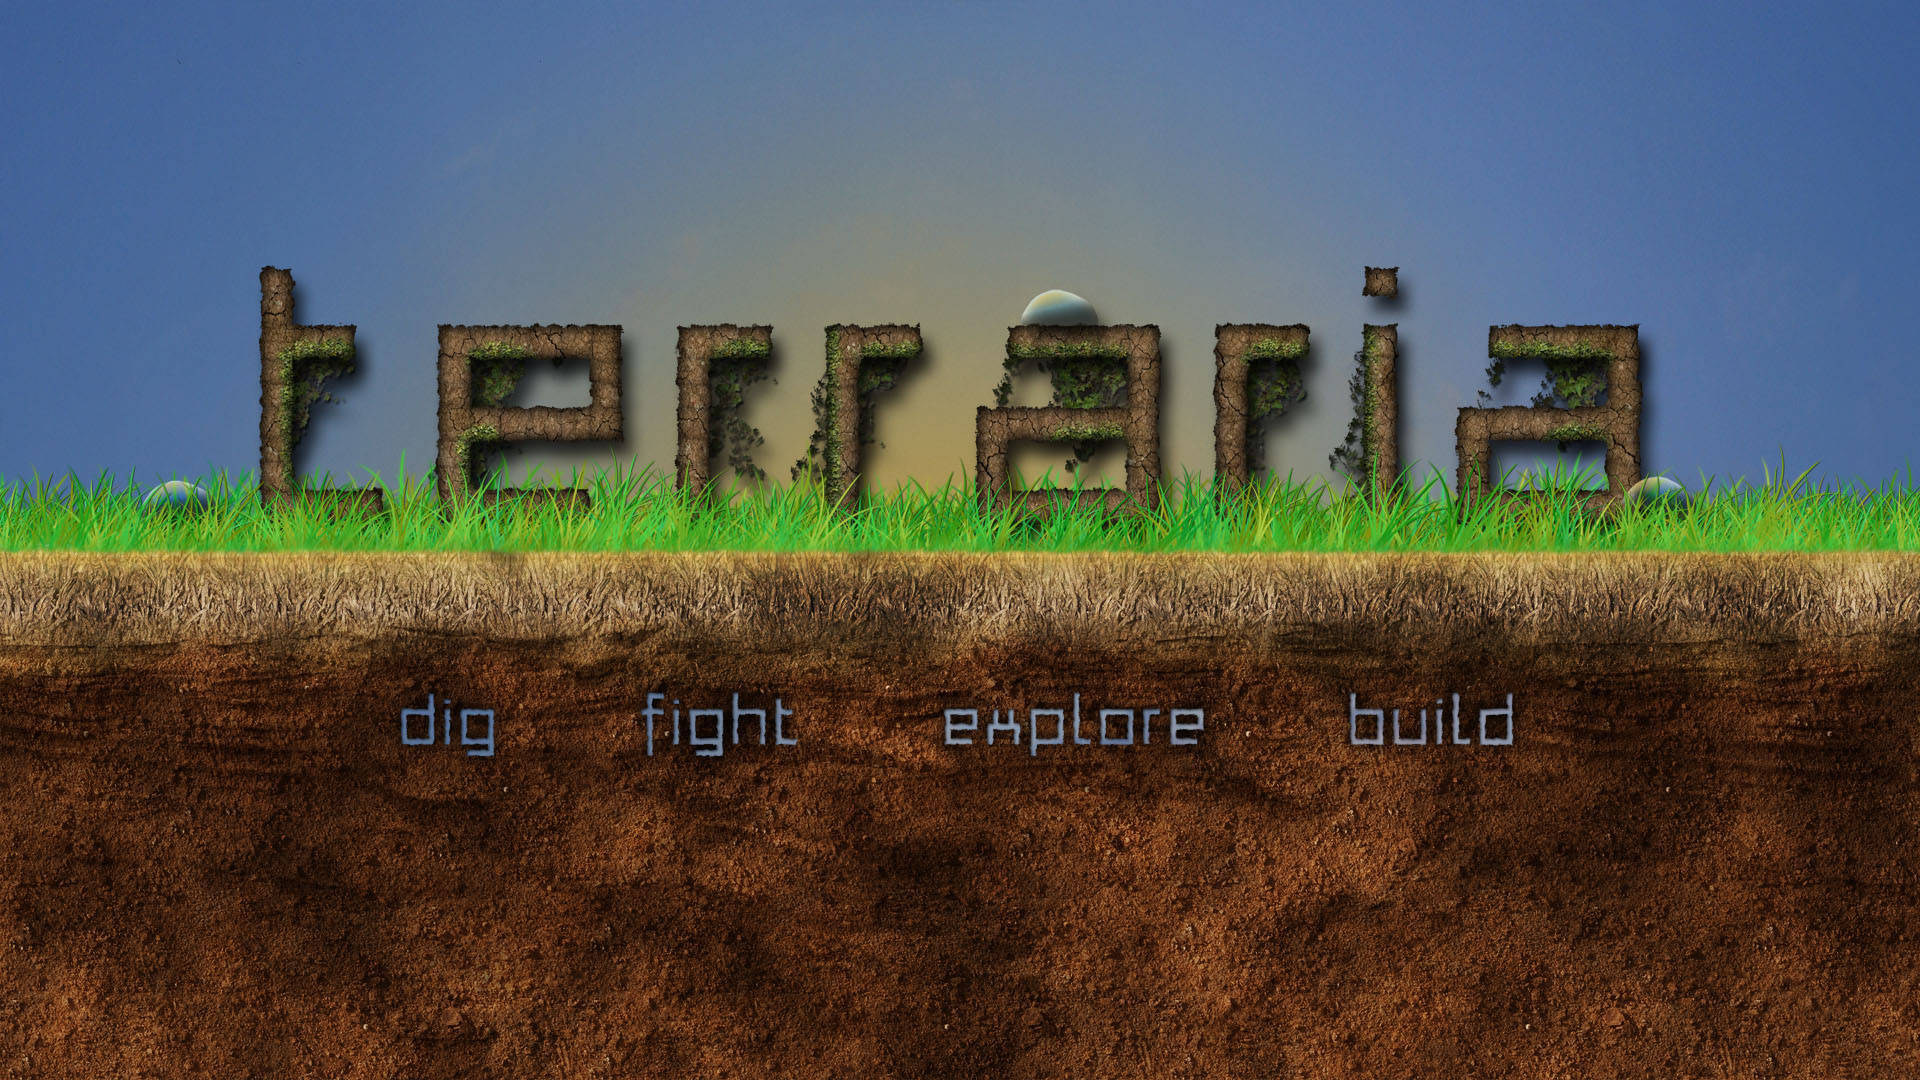 Terraria Dig Fight Explore Build